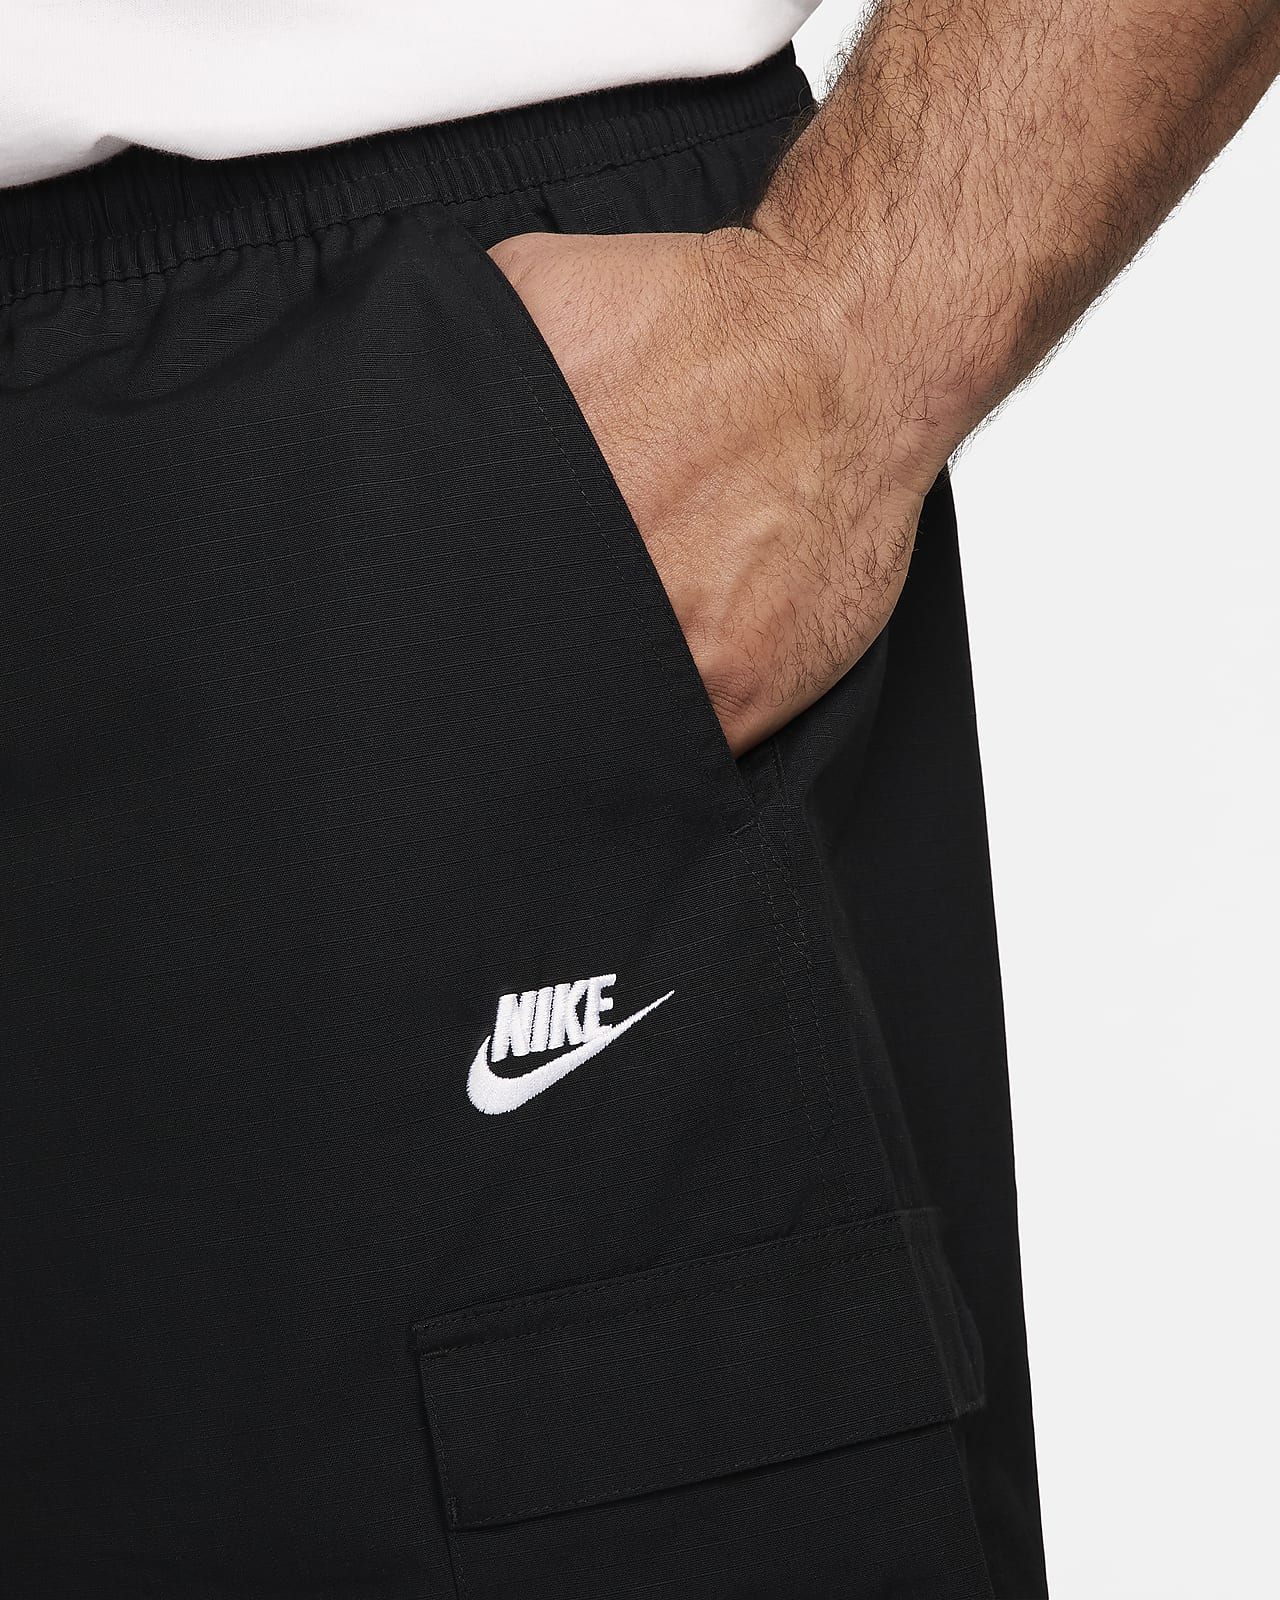 Nike Club Men's Woven Cargo Shorts